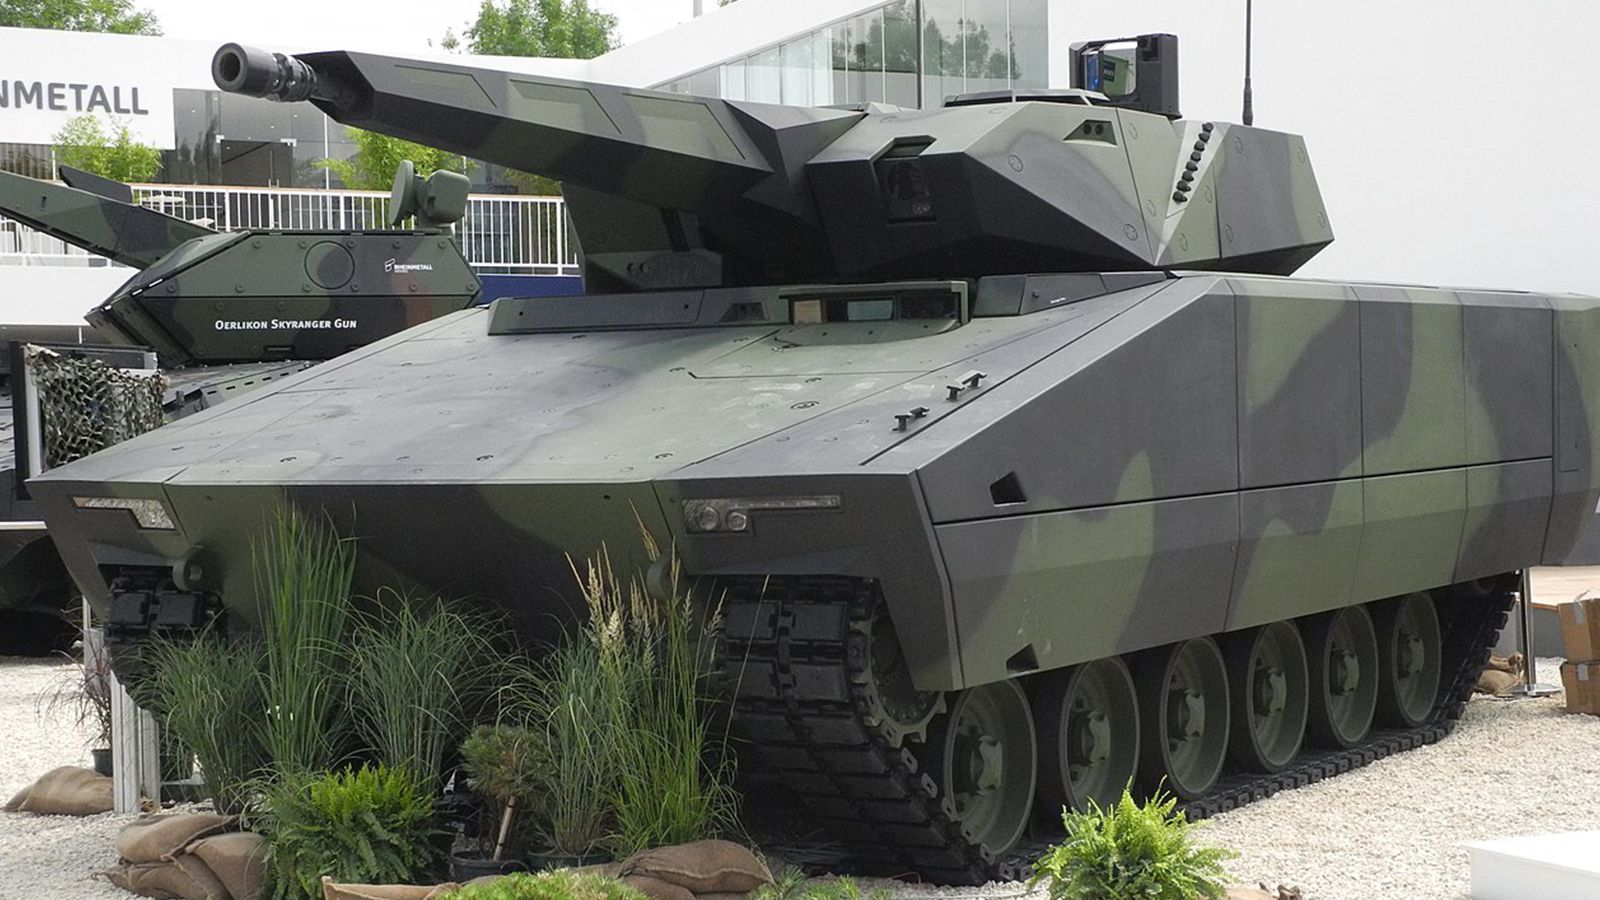 Германия передала ВС Венгрии первую партию БМП KF41 Lynx